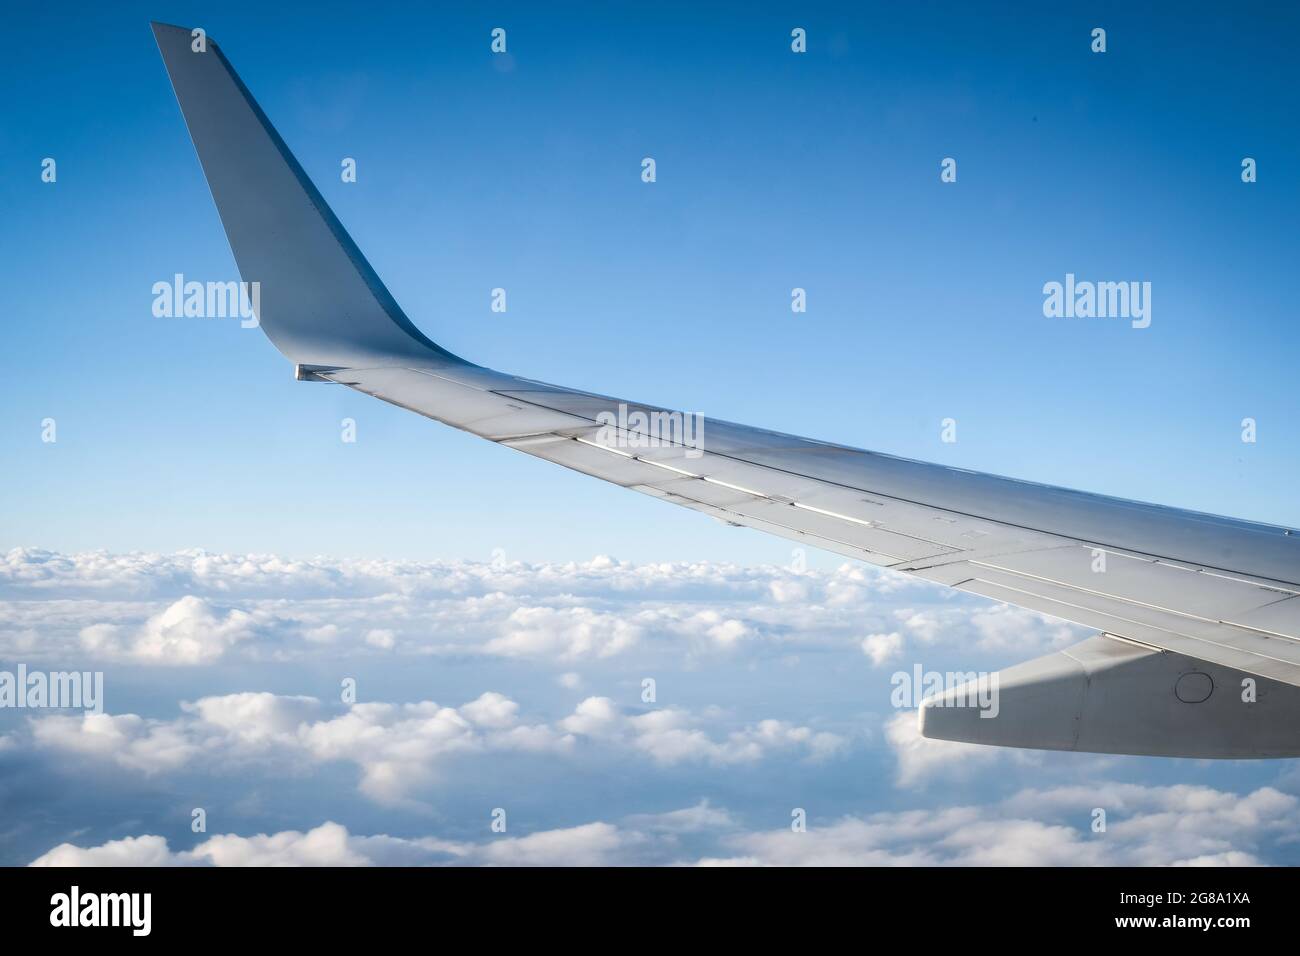 Vol au-dessus des nuages : aile d'avion et nuages cumulous Banque D'Images